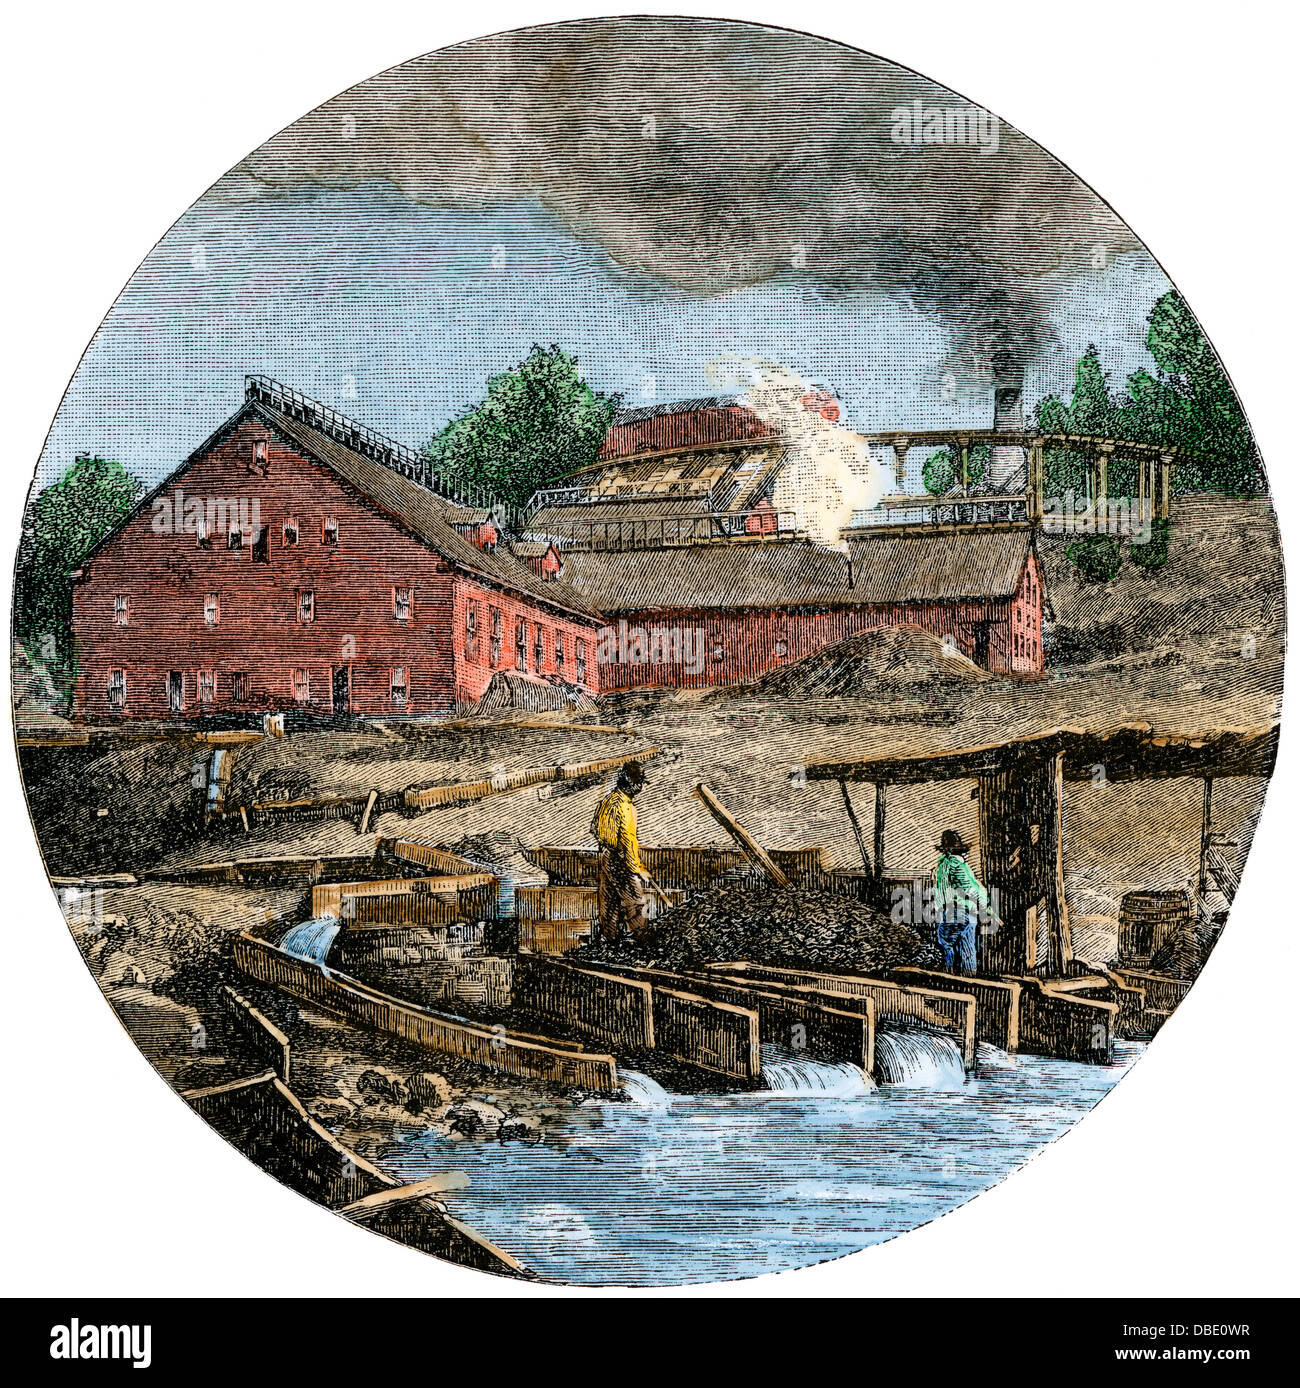 Les mineurs de cuivre du minerai de lavage des résidus dans le lac Supérieur, port de la région supérieure du Michigan, 1880. À la main, gravure sur bois Banque D'Images